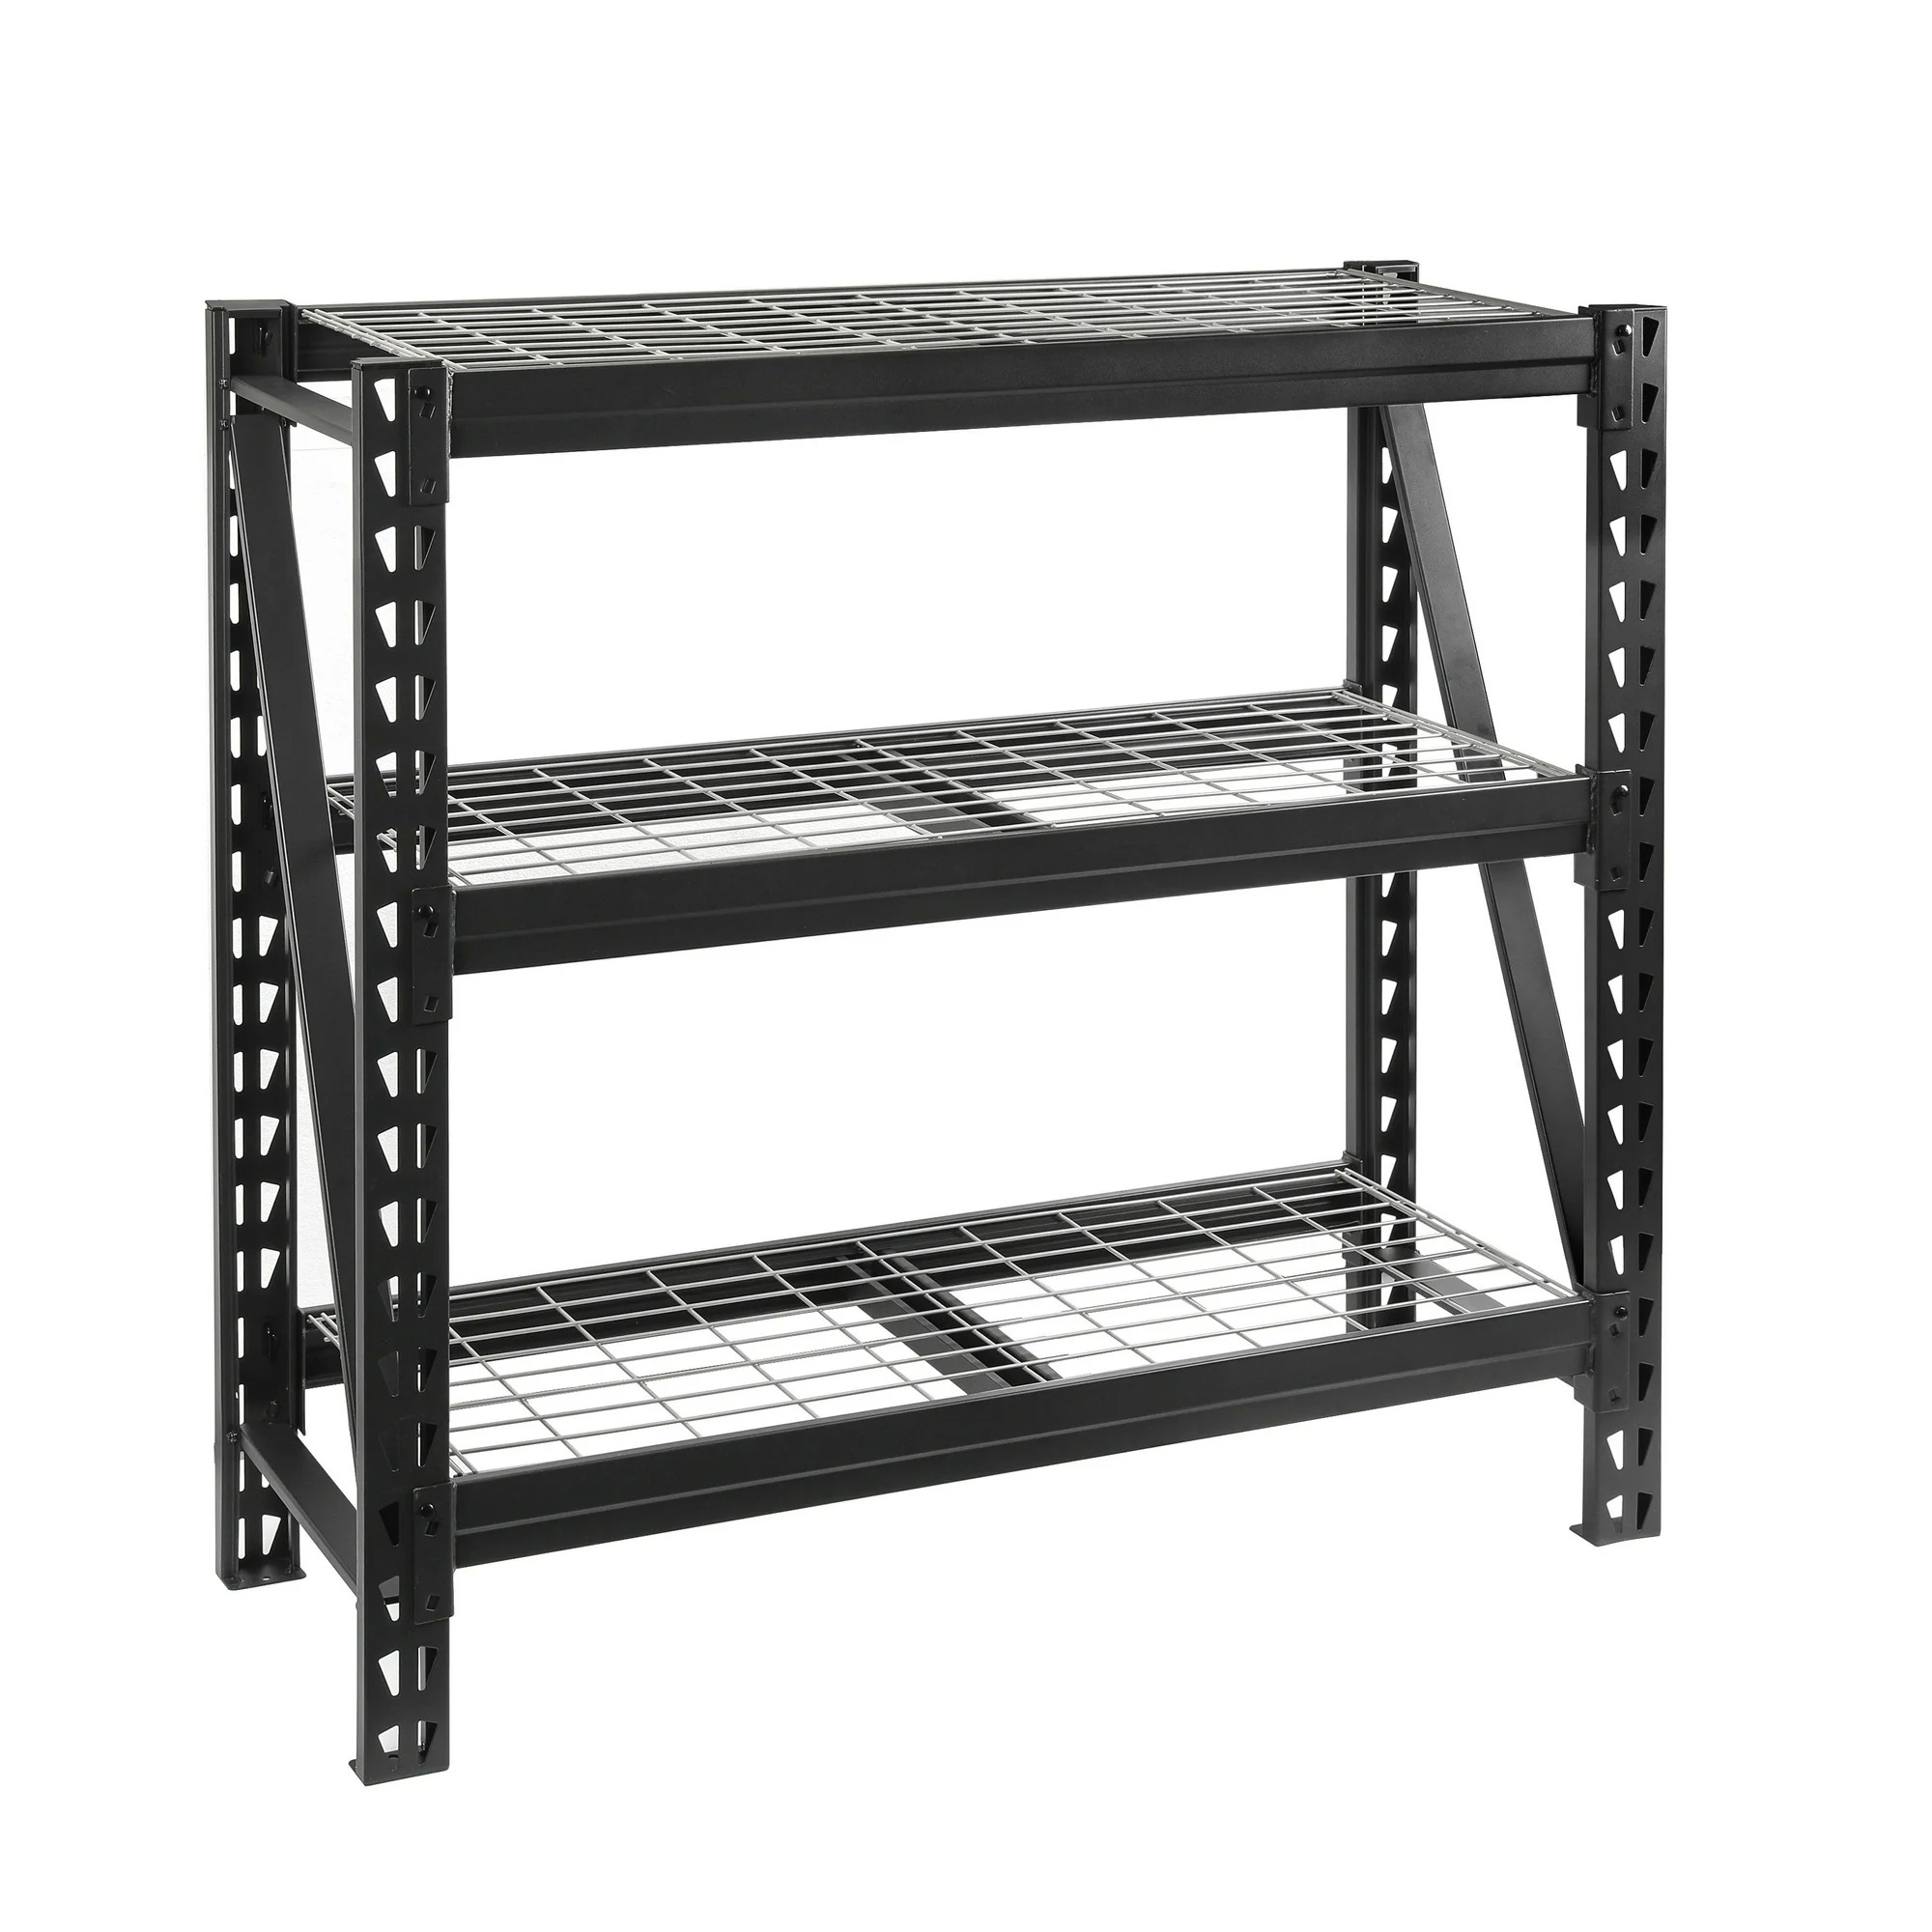 WORKPRO Freestanding Shelf: 3-Tier w/ Steel Decks (1,500-lb Capacity Per Shelf) $49 or 5-Tier w/ Particle Board Decks (800-lb Capacity Per Shelf) $69 + Free Shipping